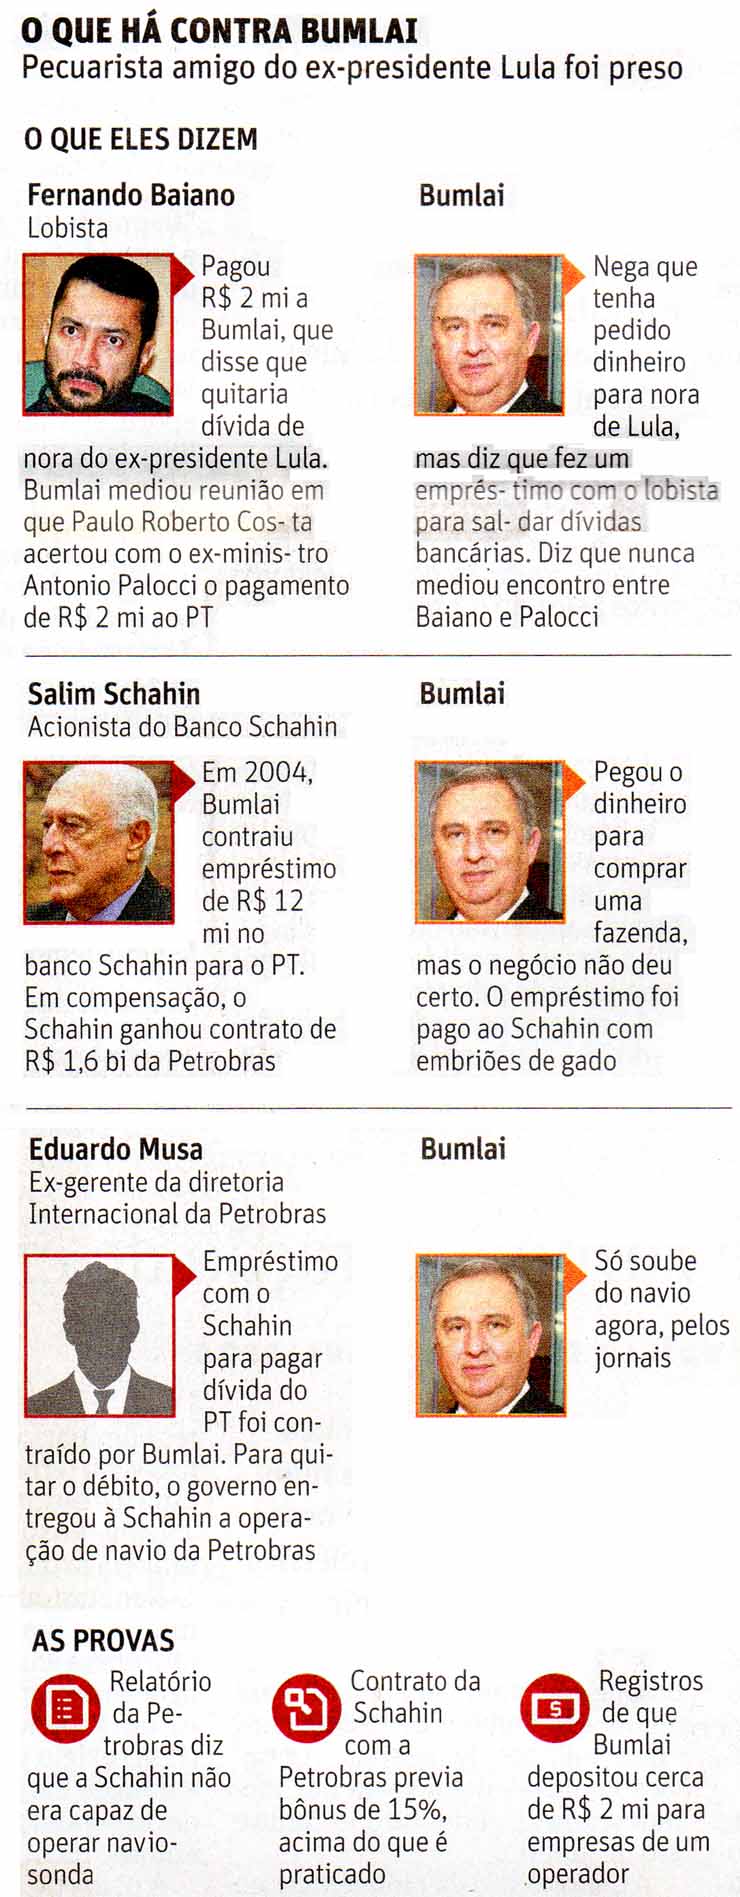 Folha de So Paulo - 25/11/15 - O que h contra Bumlai - Infogrfico